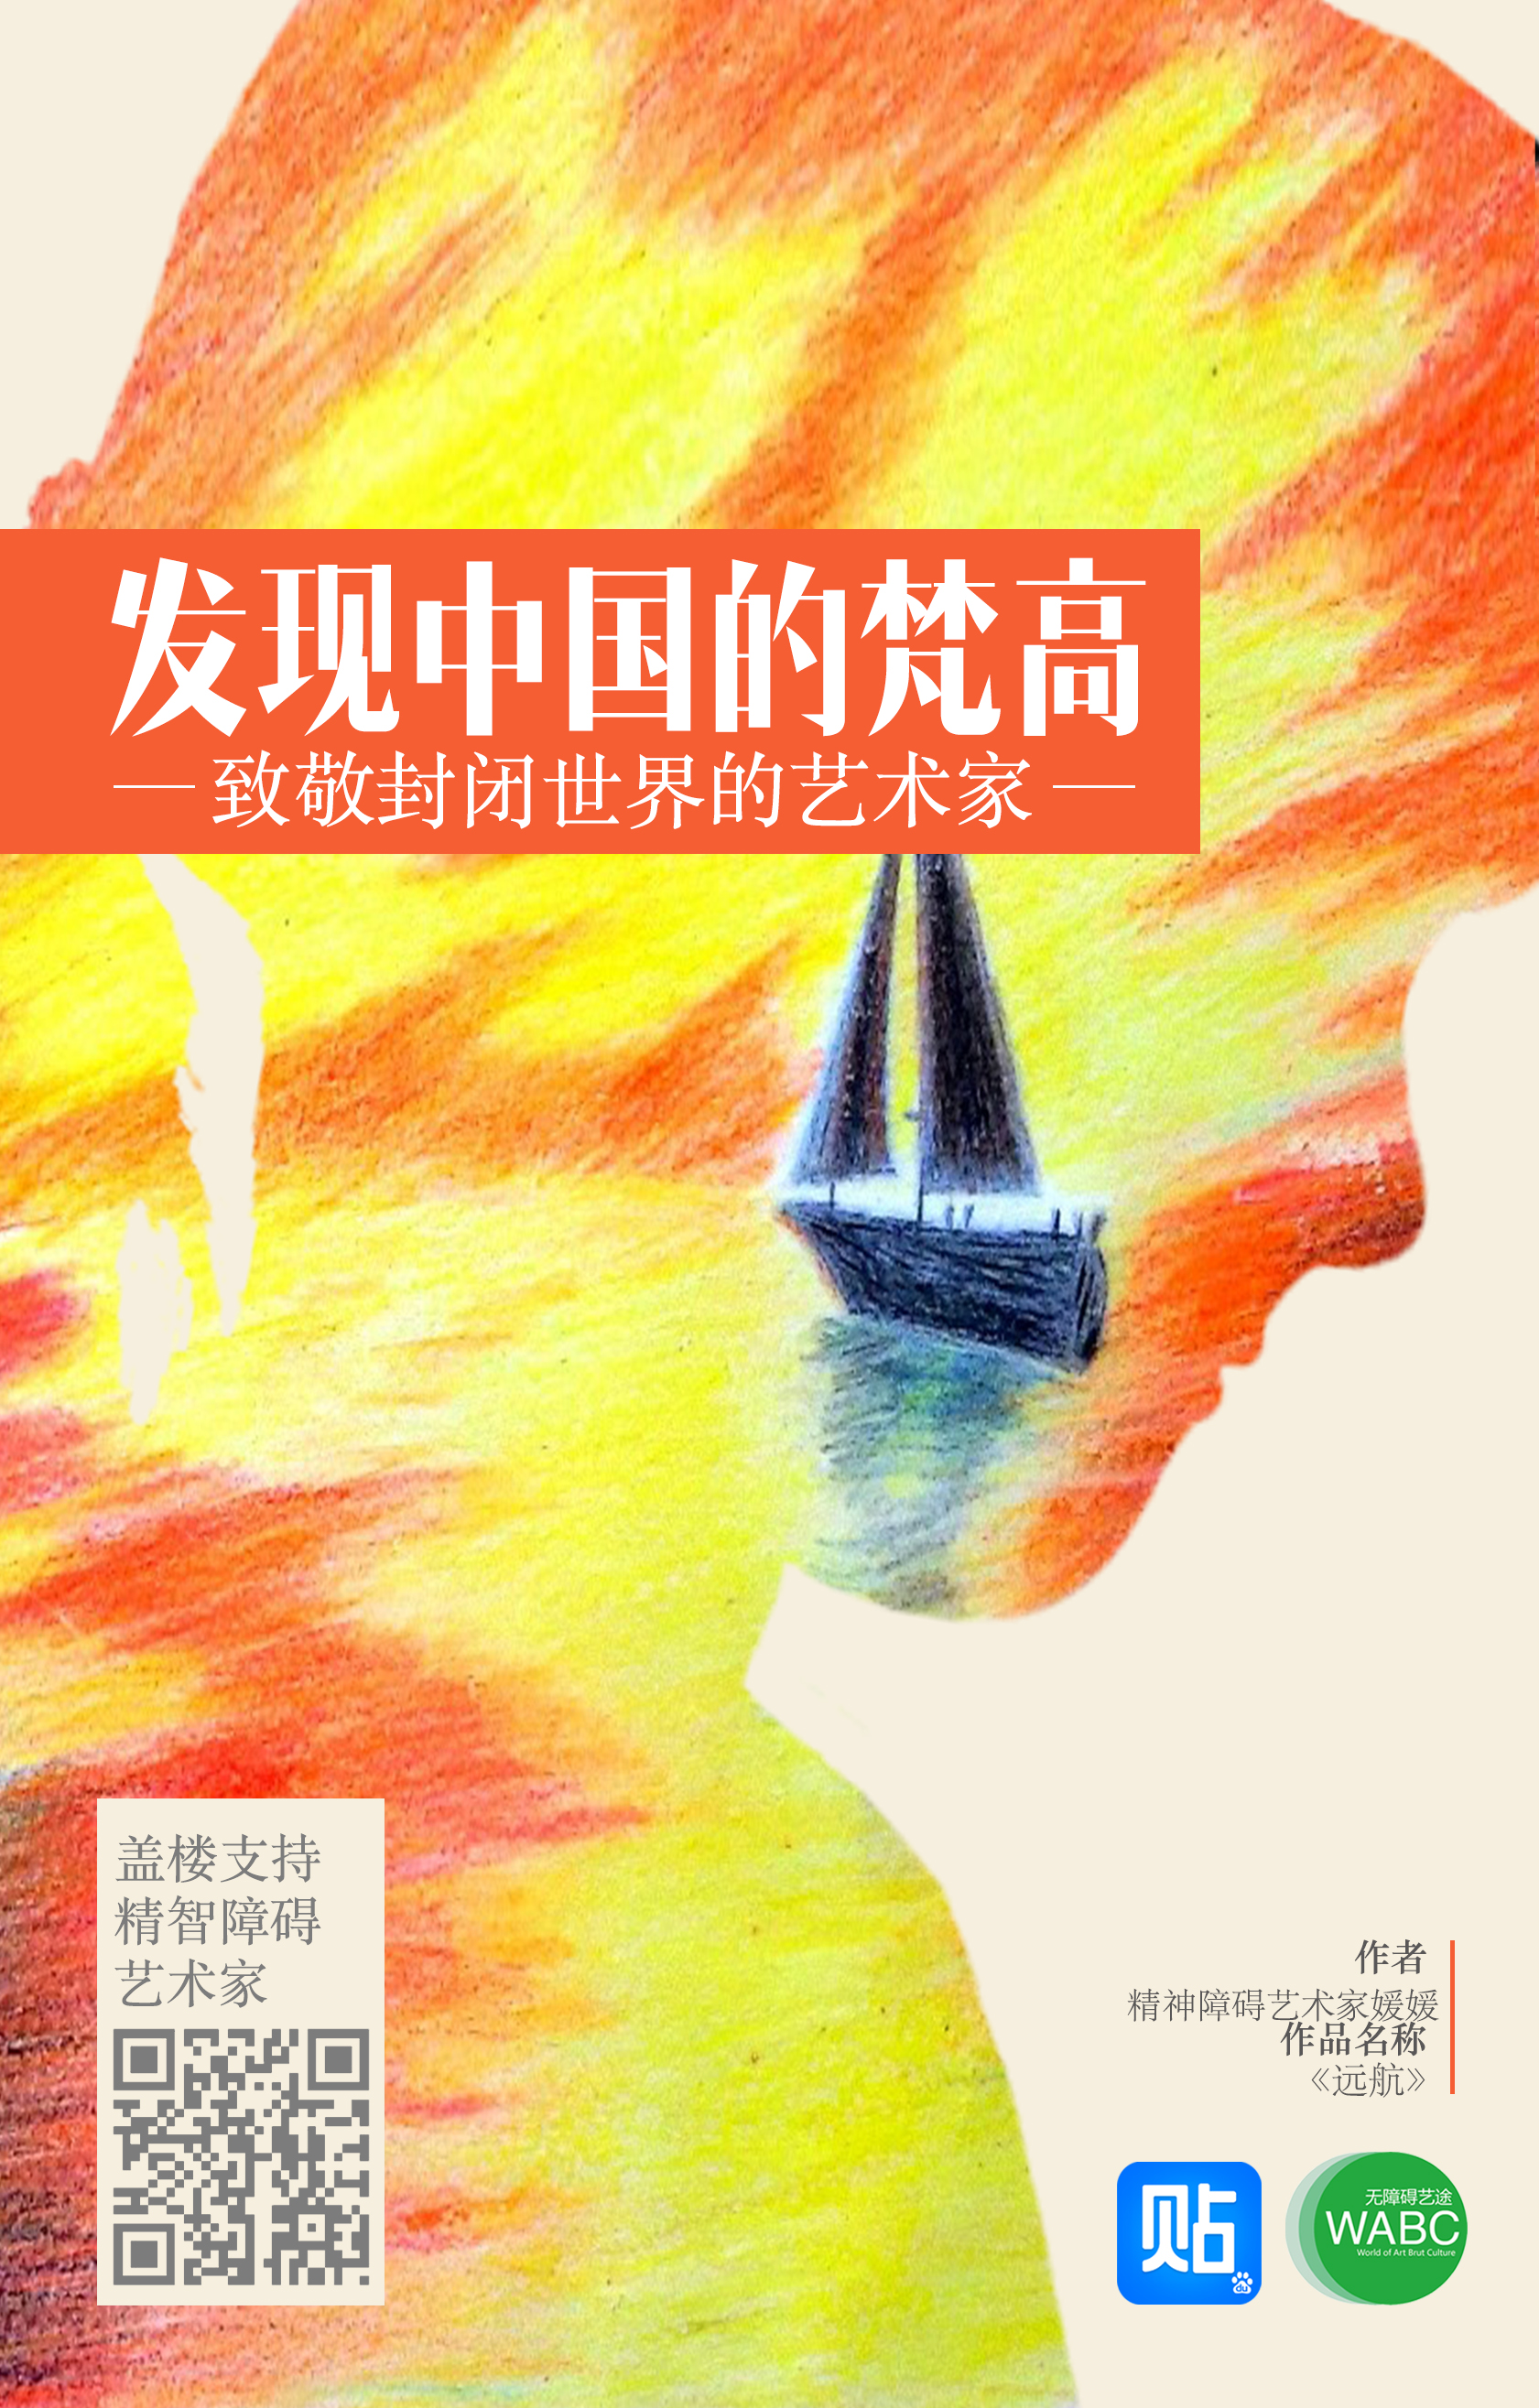 寻找中国的梵高-百度贴吧公益画展4.jpg